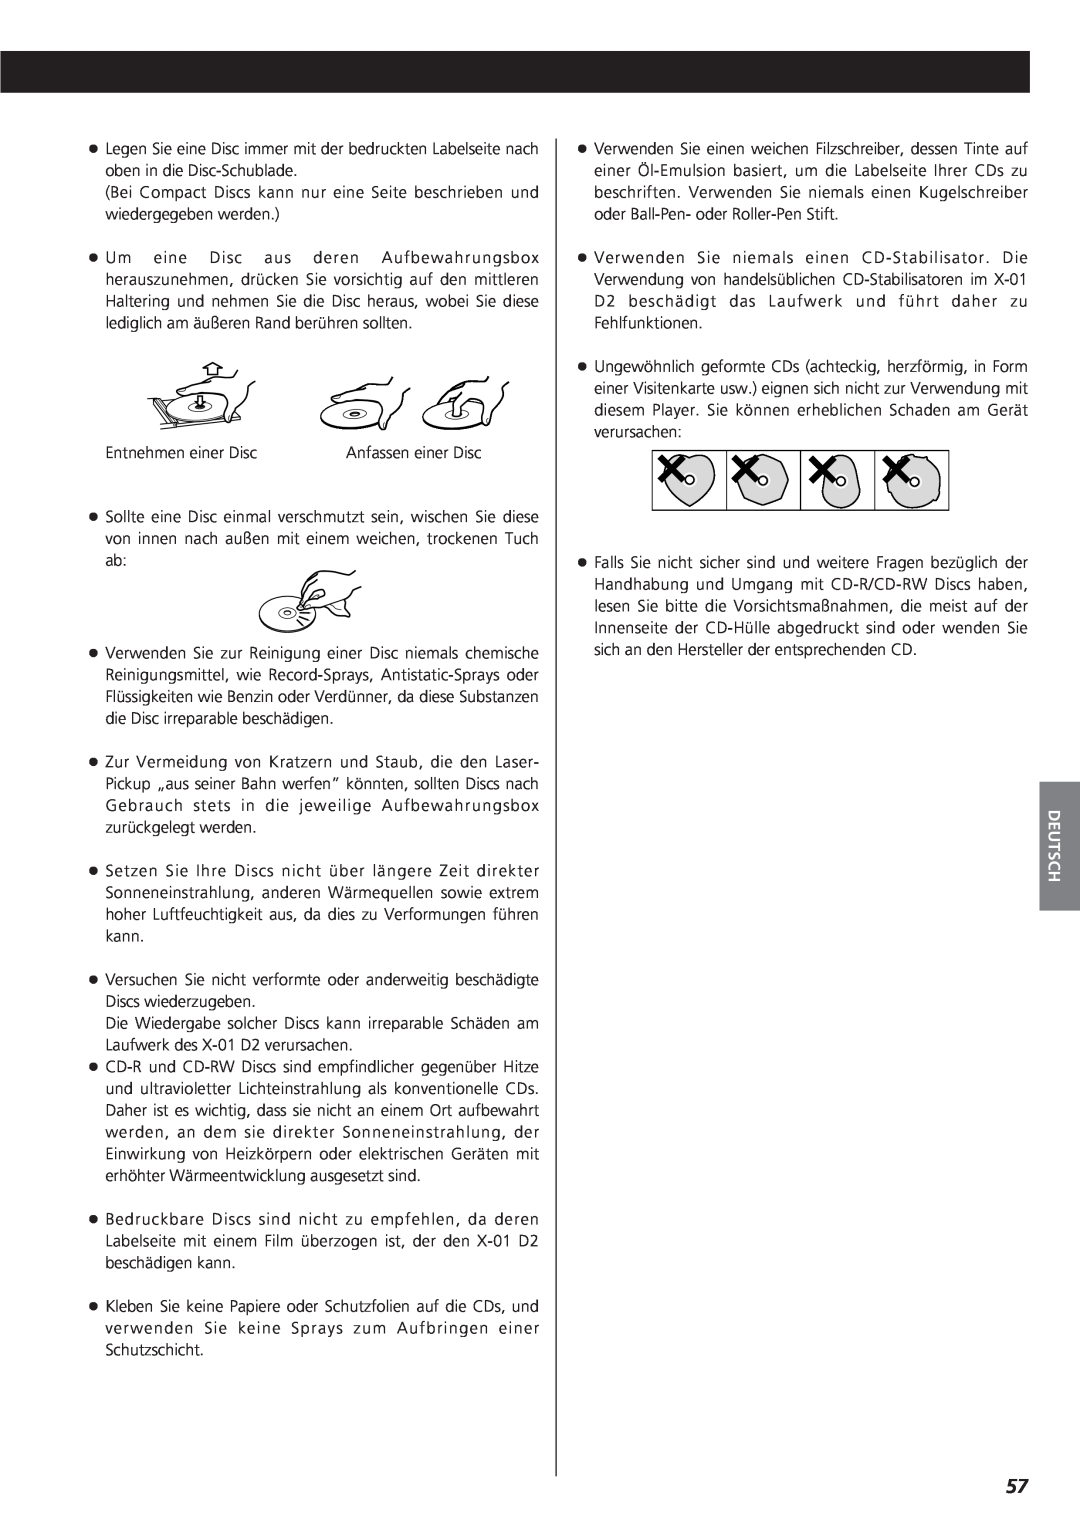 Teac X-01 D2 owner manual Entnehmen einer Disc, Deutsch 